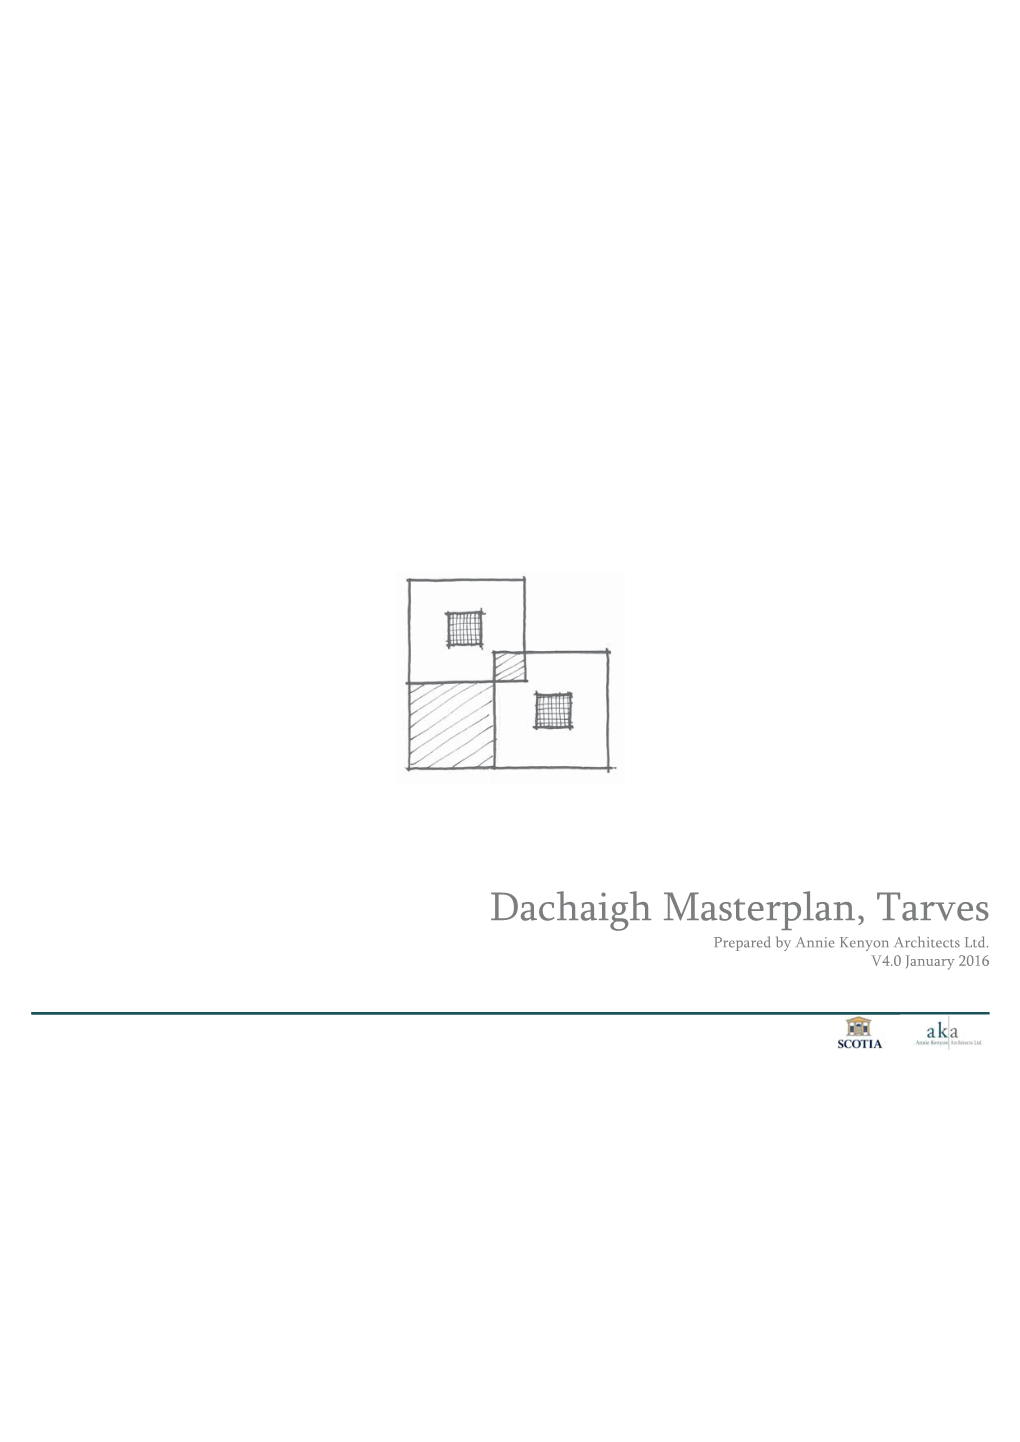 Dachaigh Masterplan, Tarves Prepared by Annie Kenyon Architects Ltd